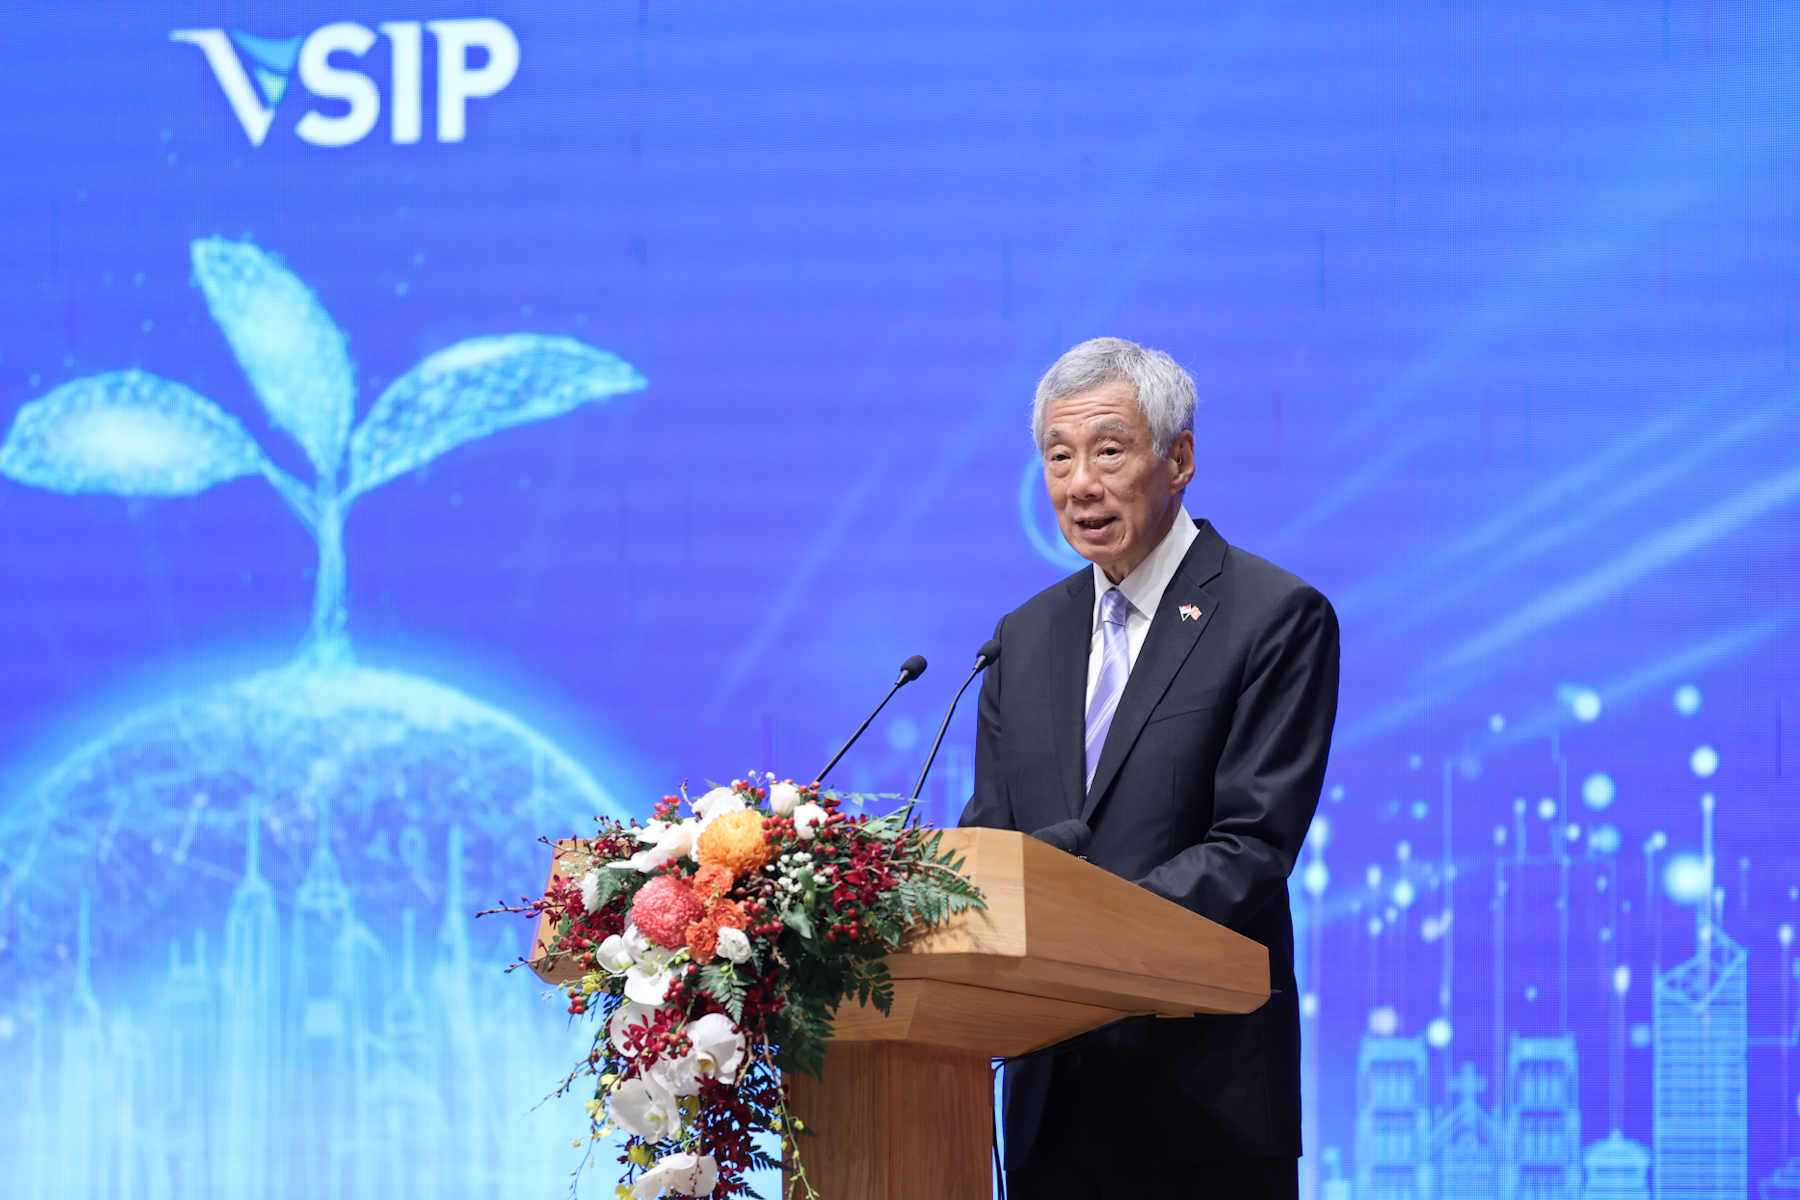  Việt Nam-Singapore: Phát triển 17 dự án VSIP mới - Ảnh 3.